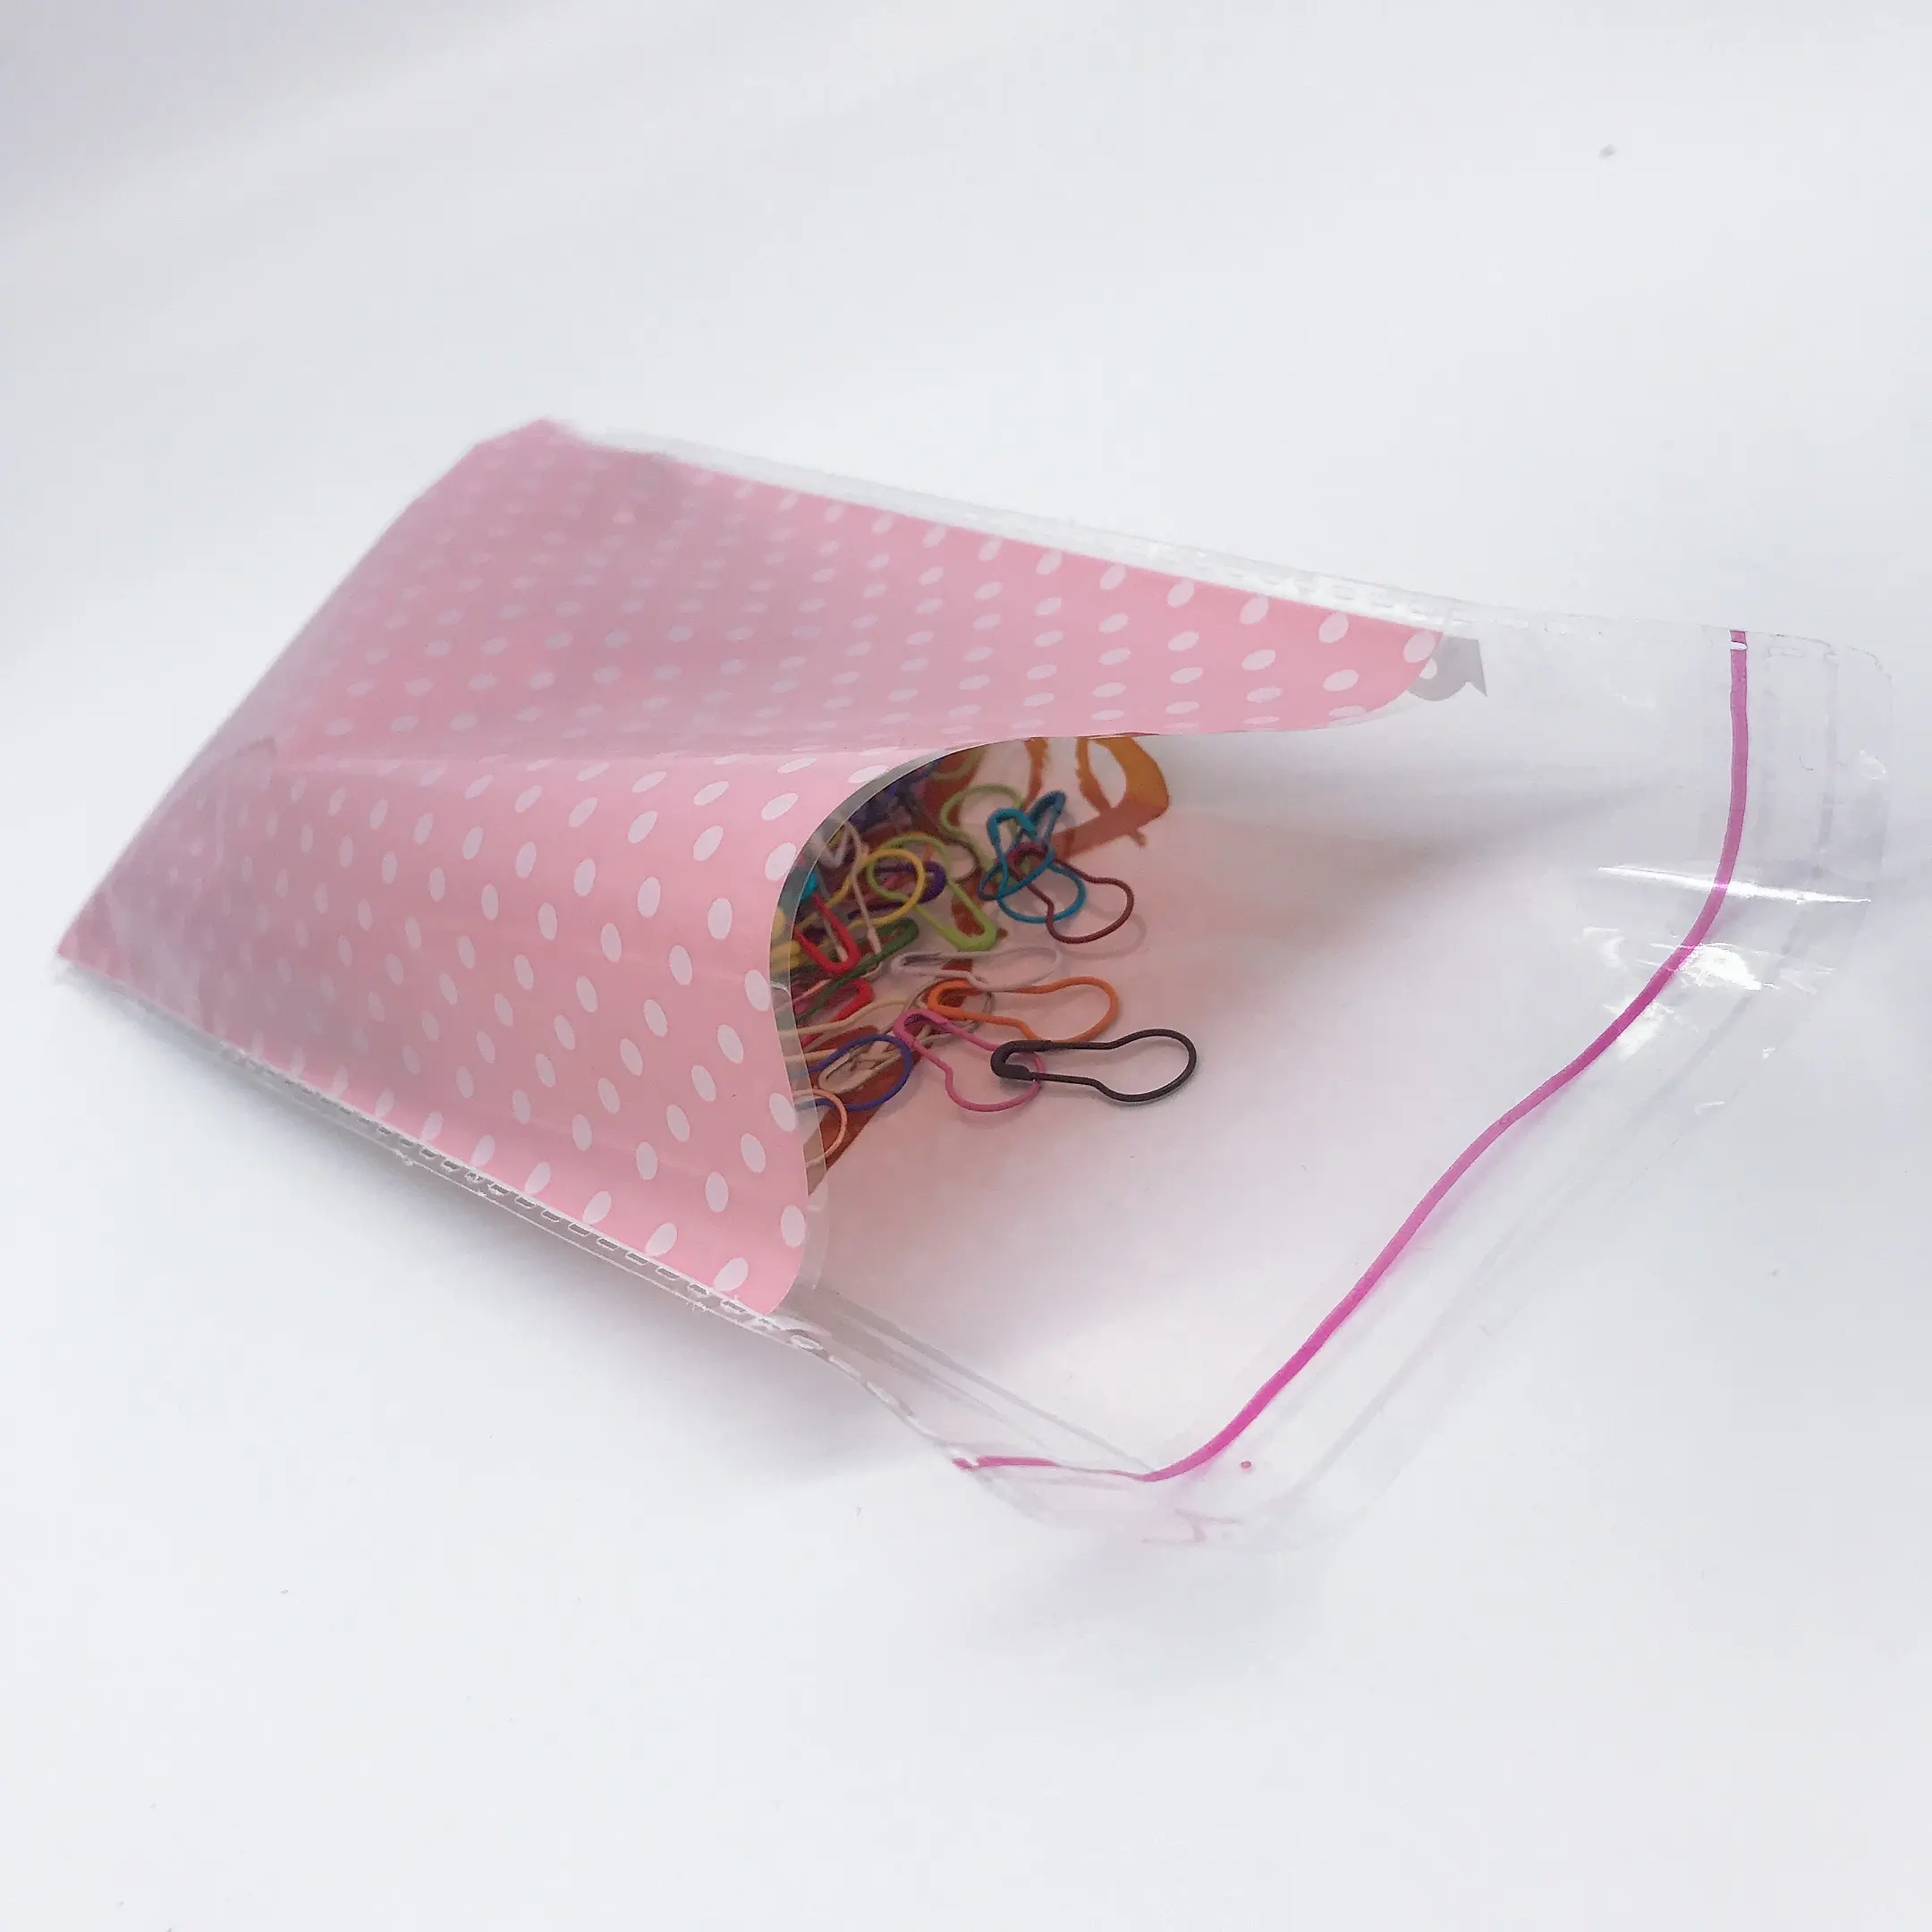 Großhandel custom mode design 100 transparent OPP selbst-adhesive versiegelt kunststoff glas geschenk candy und schmuck taschen